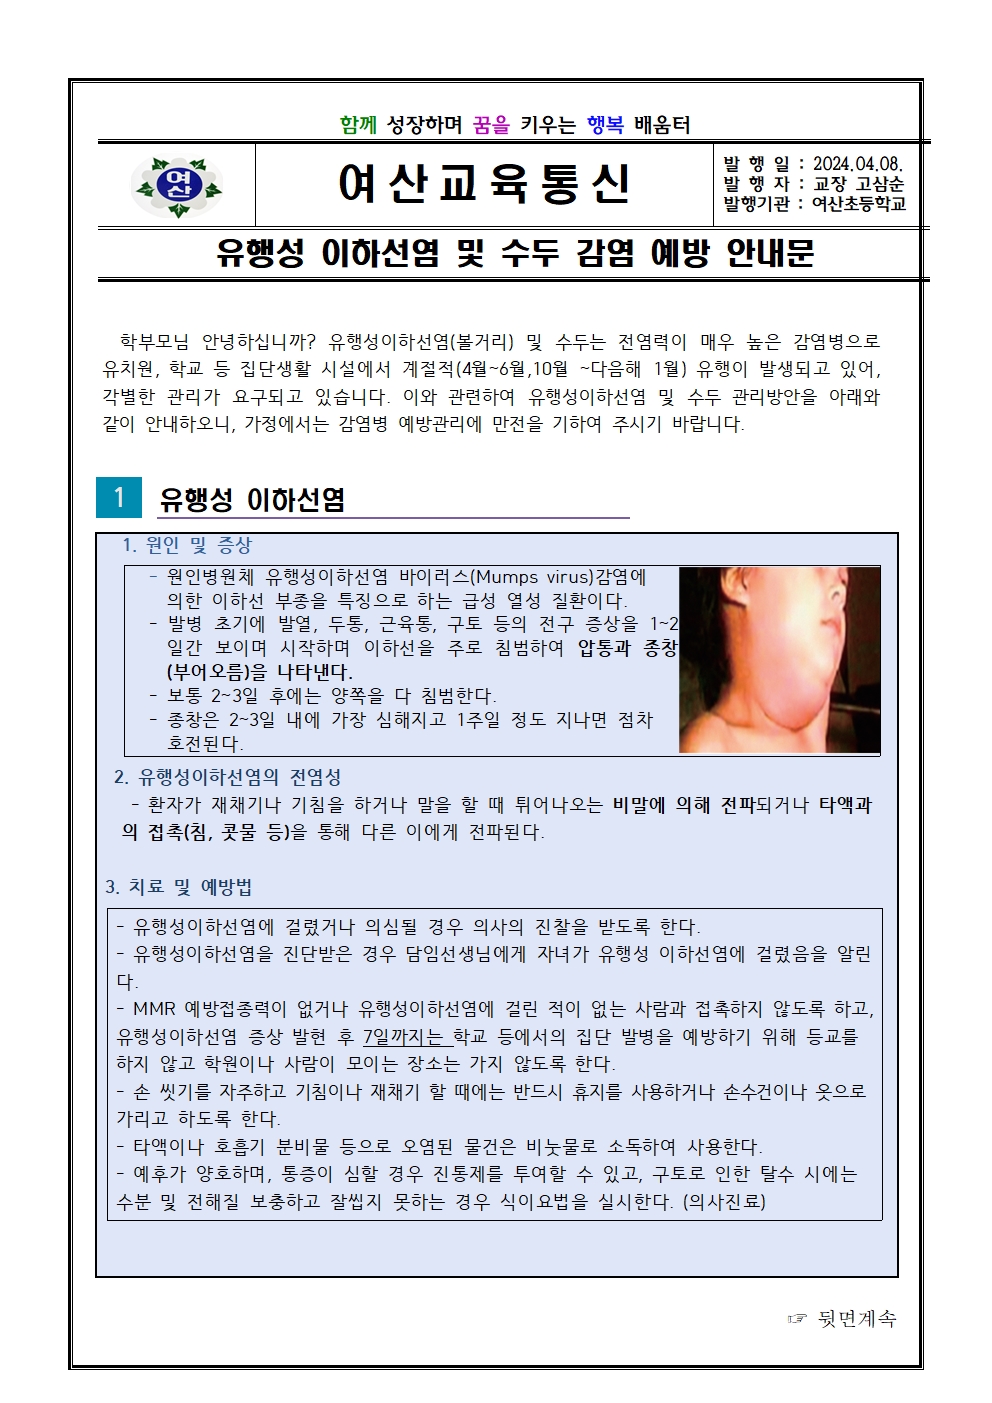 유행성이하선염 및 수두 감염 예방 안내문001